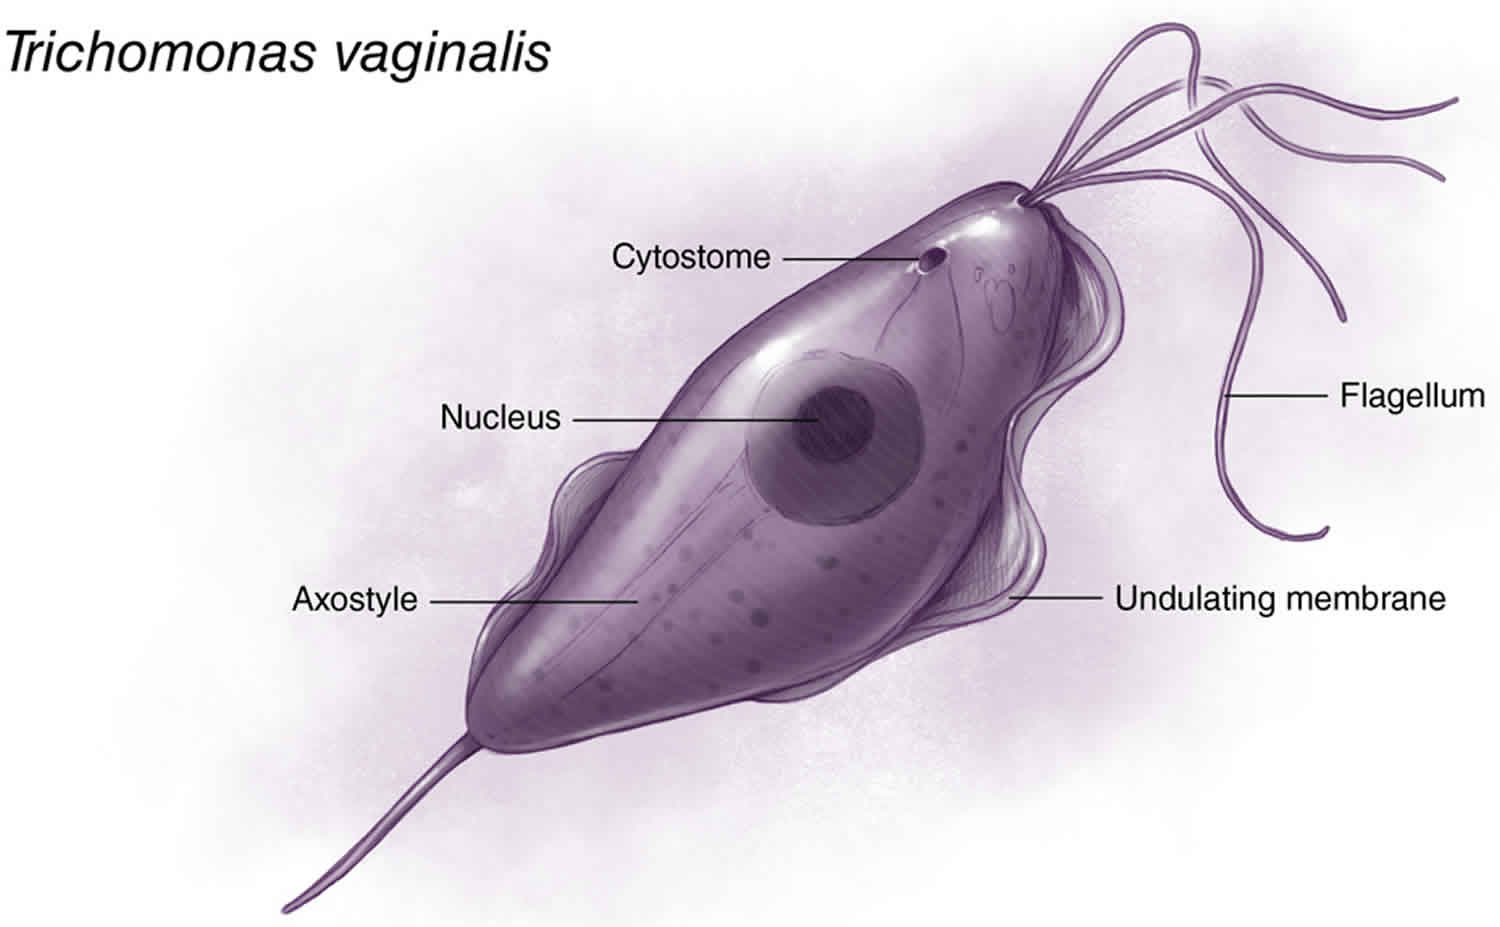 Trichomonas vaginitis